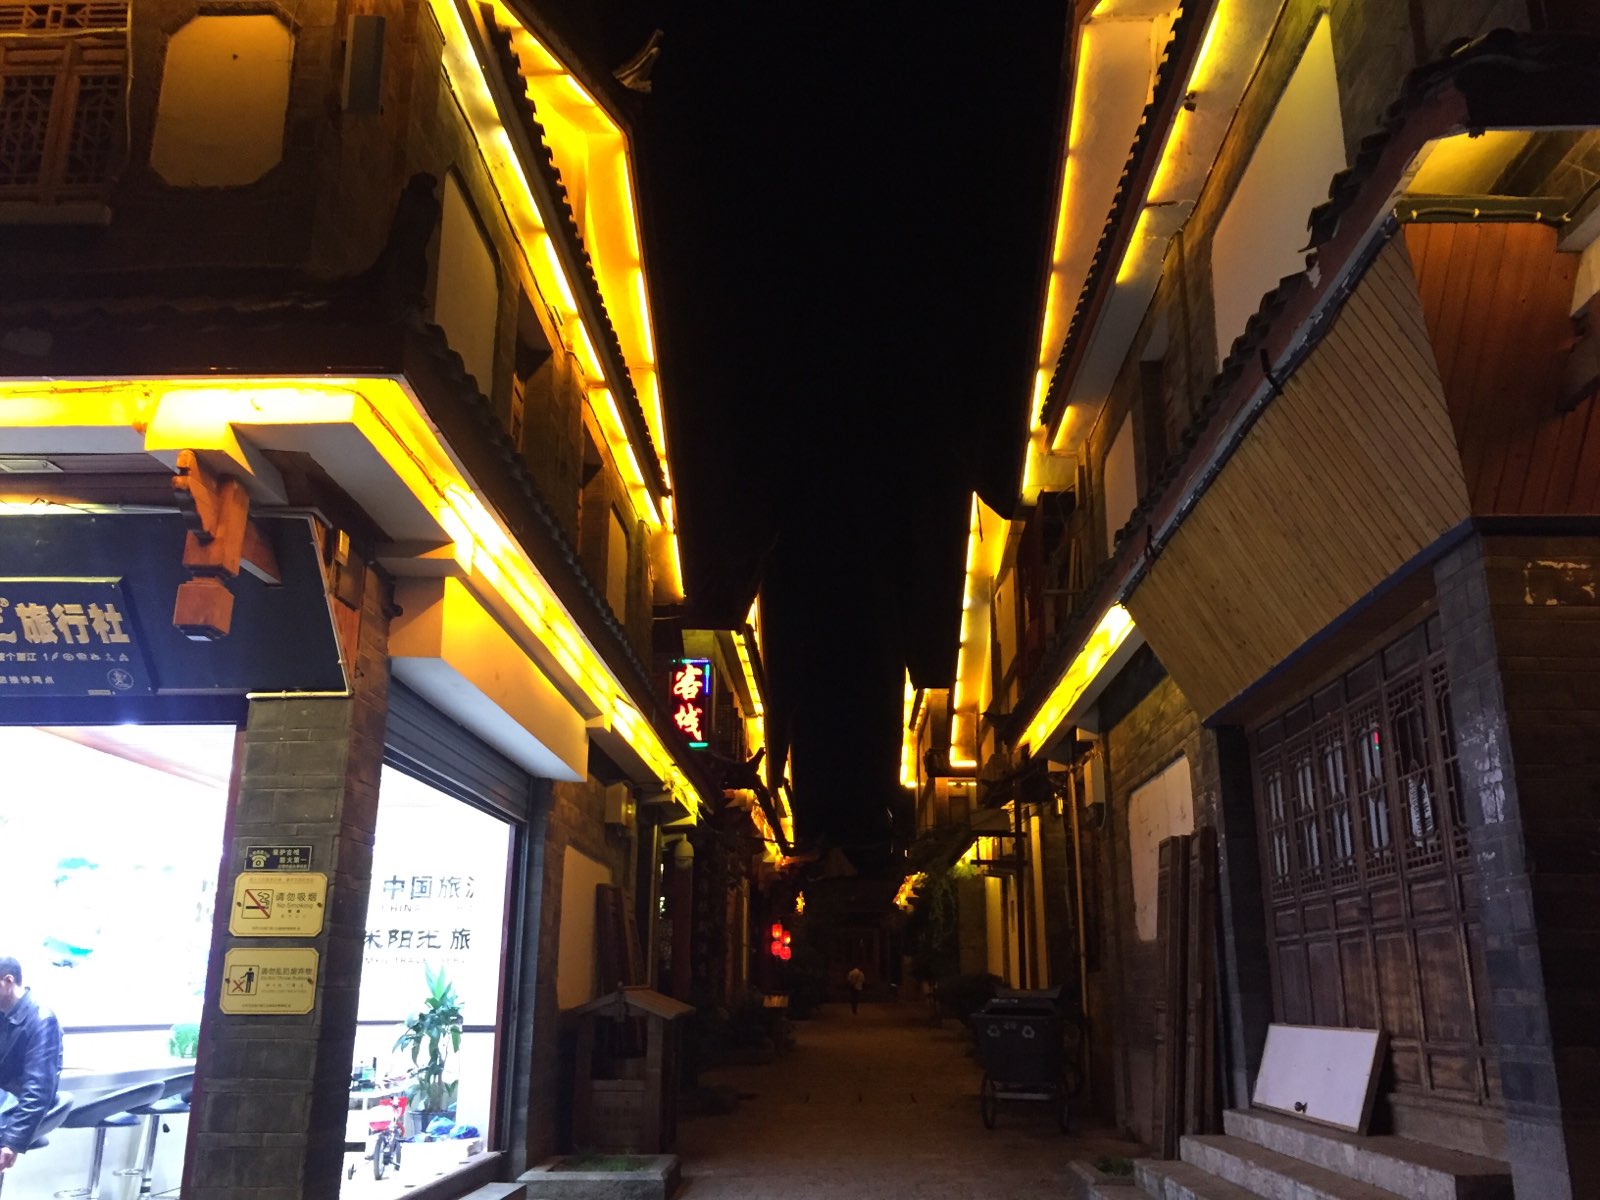 早上的丽江古城没什么人，而很多店铺还没开门，古城逛了好几次，人数晚上最